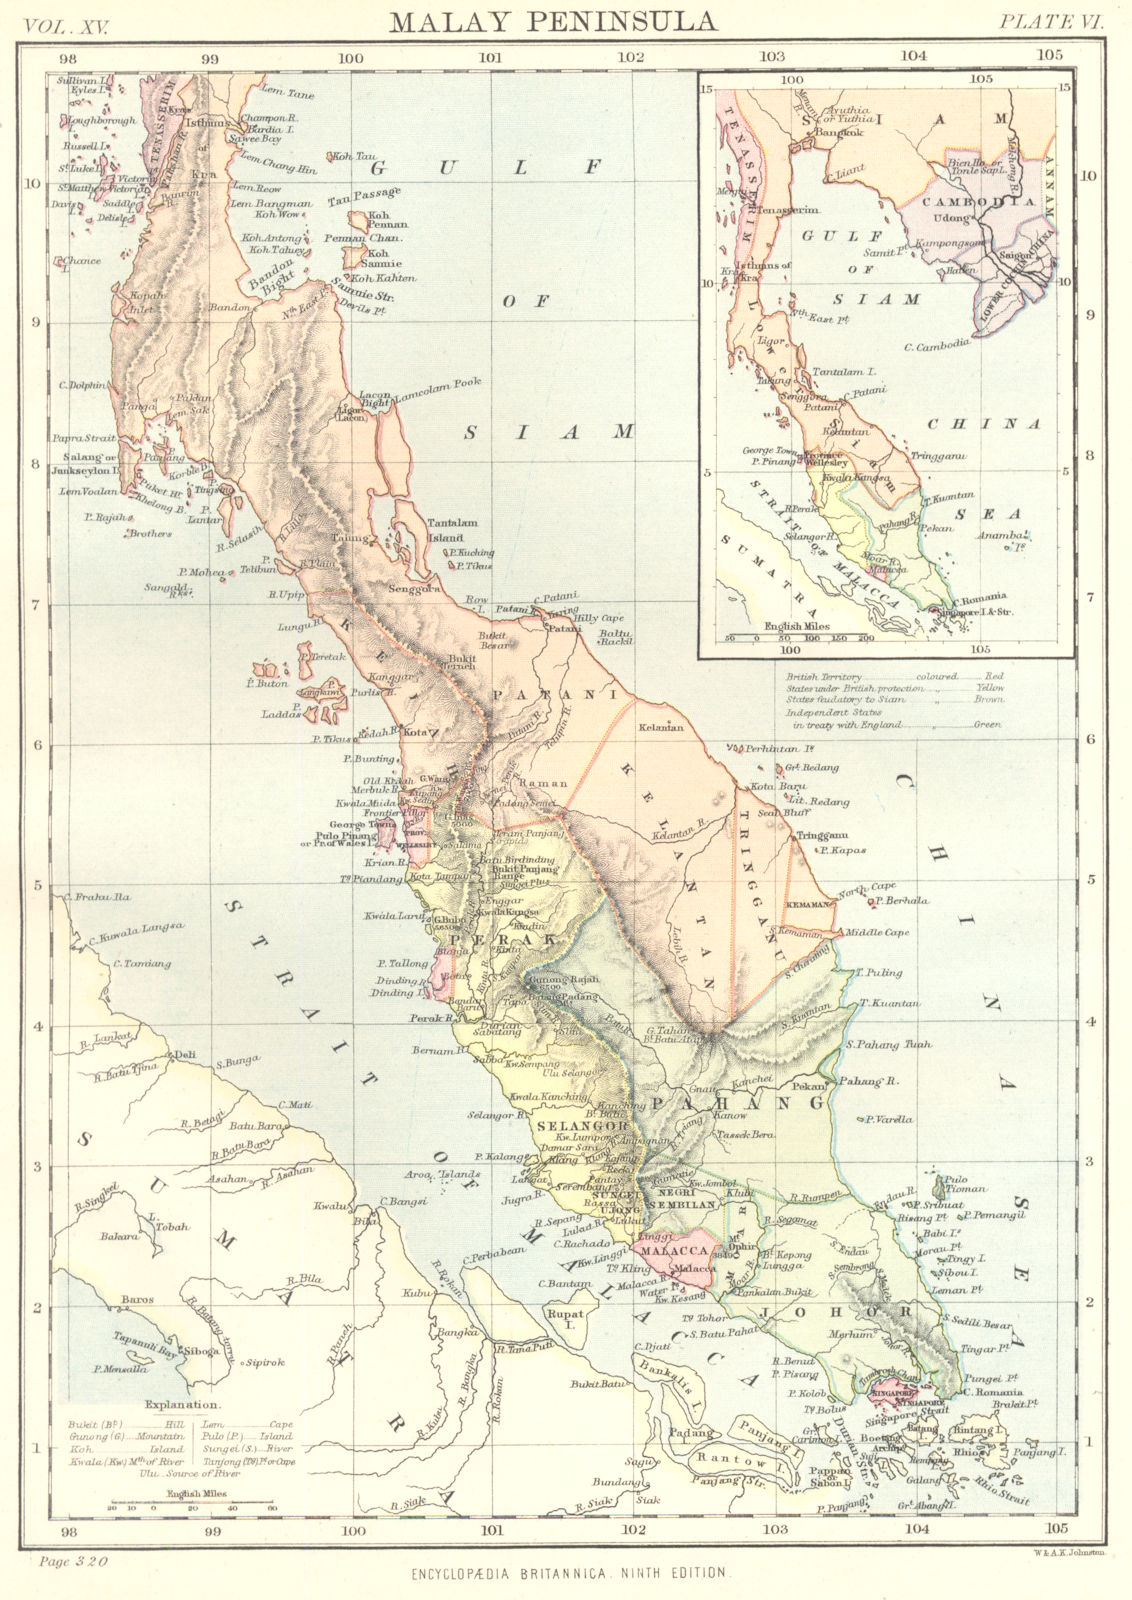 MALAY PENINSULA. Malaysia. States. Singapore; Inset Gulf of Thailand. 1898 map